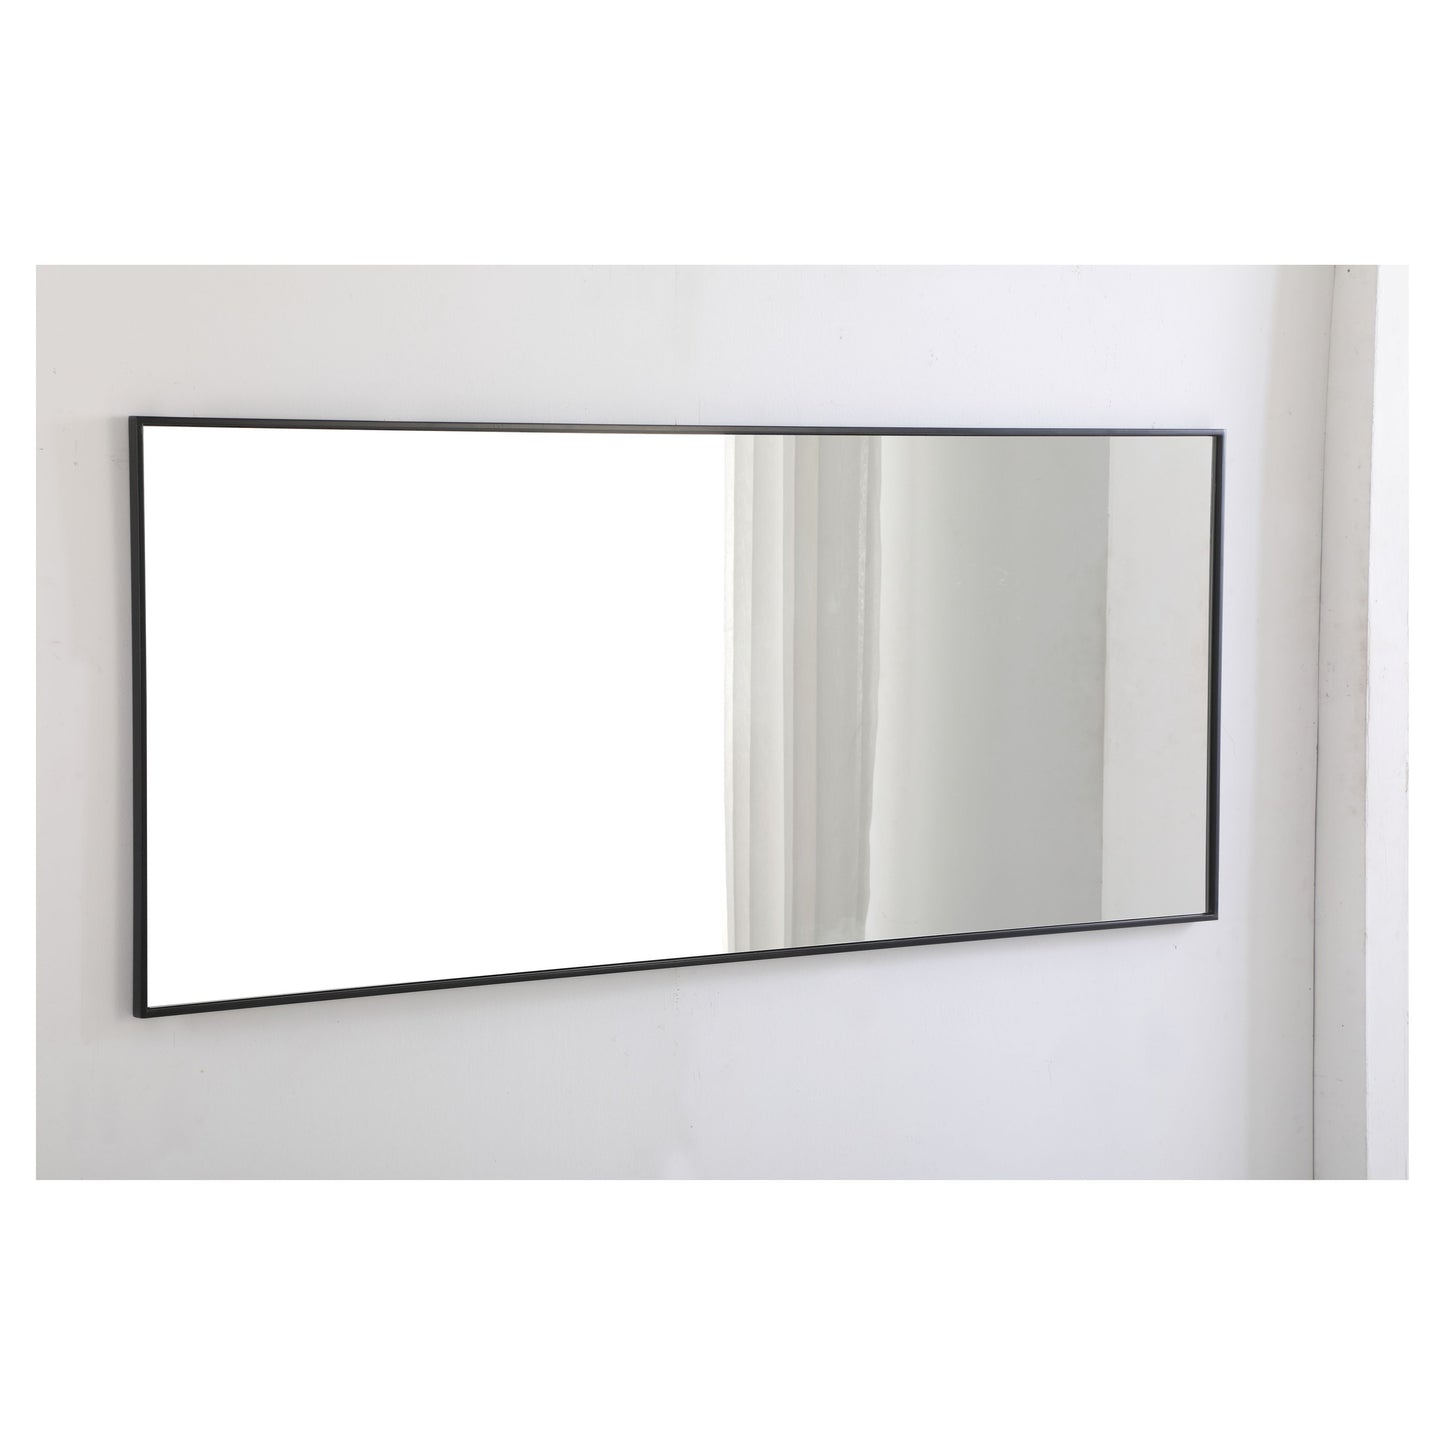 MR4084BK Monet 30" x 72" Metal Framed Rectangular Mirror in Black